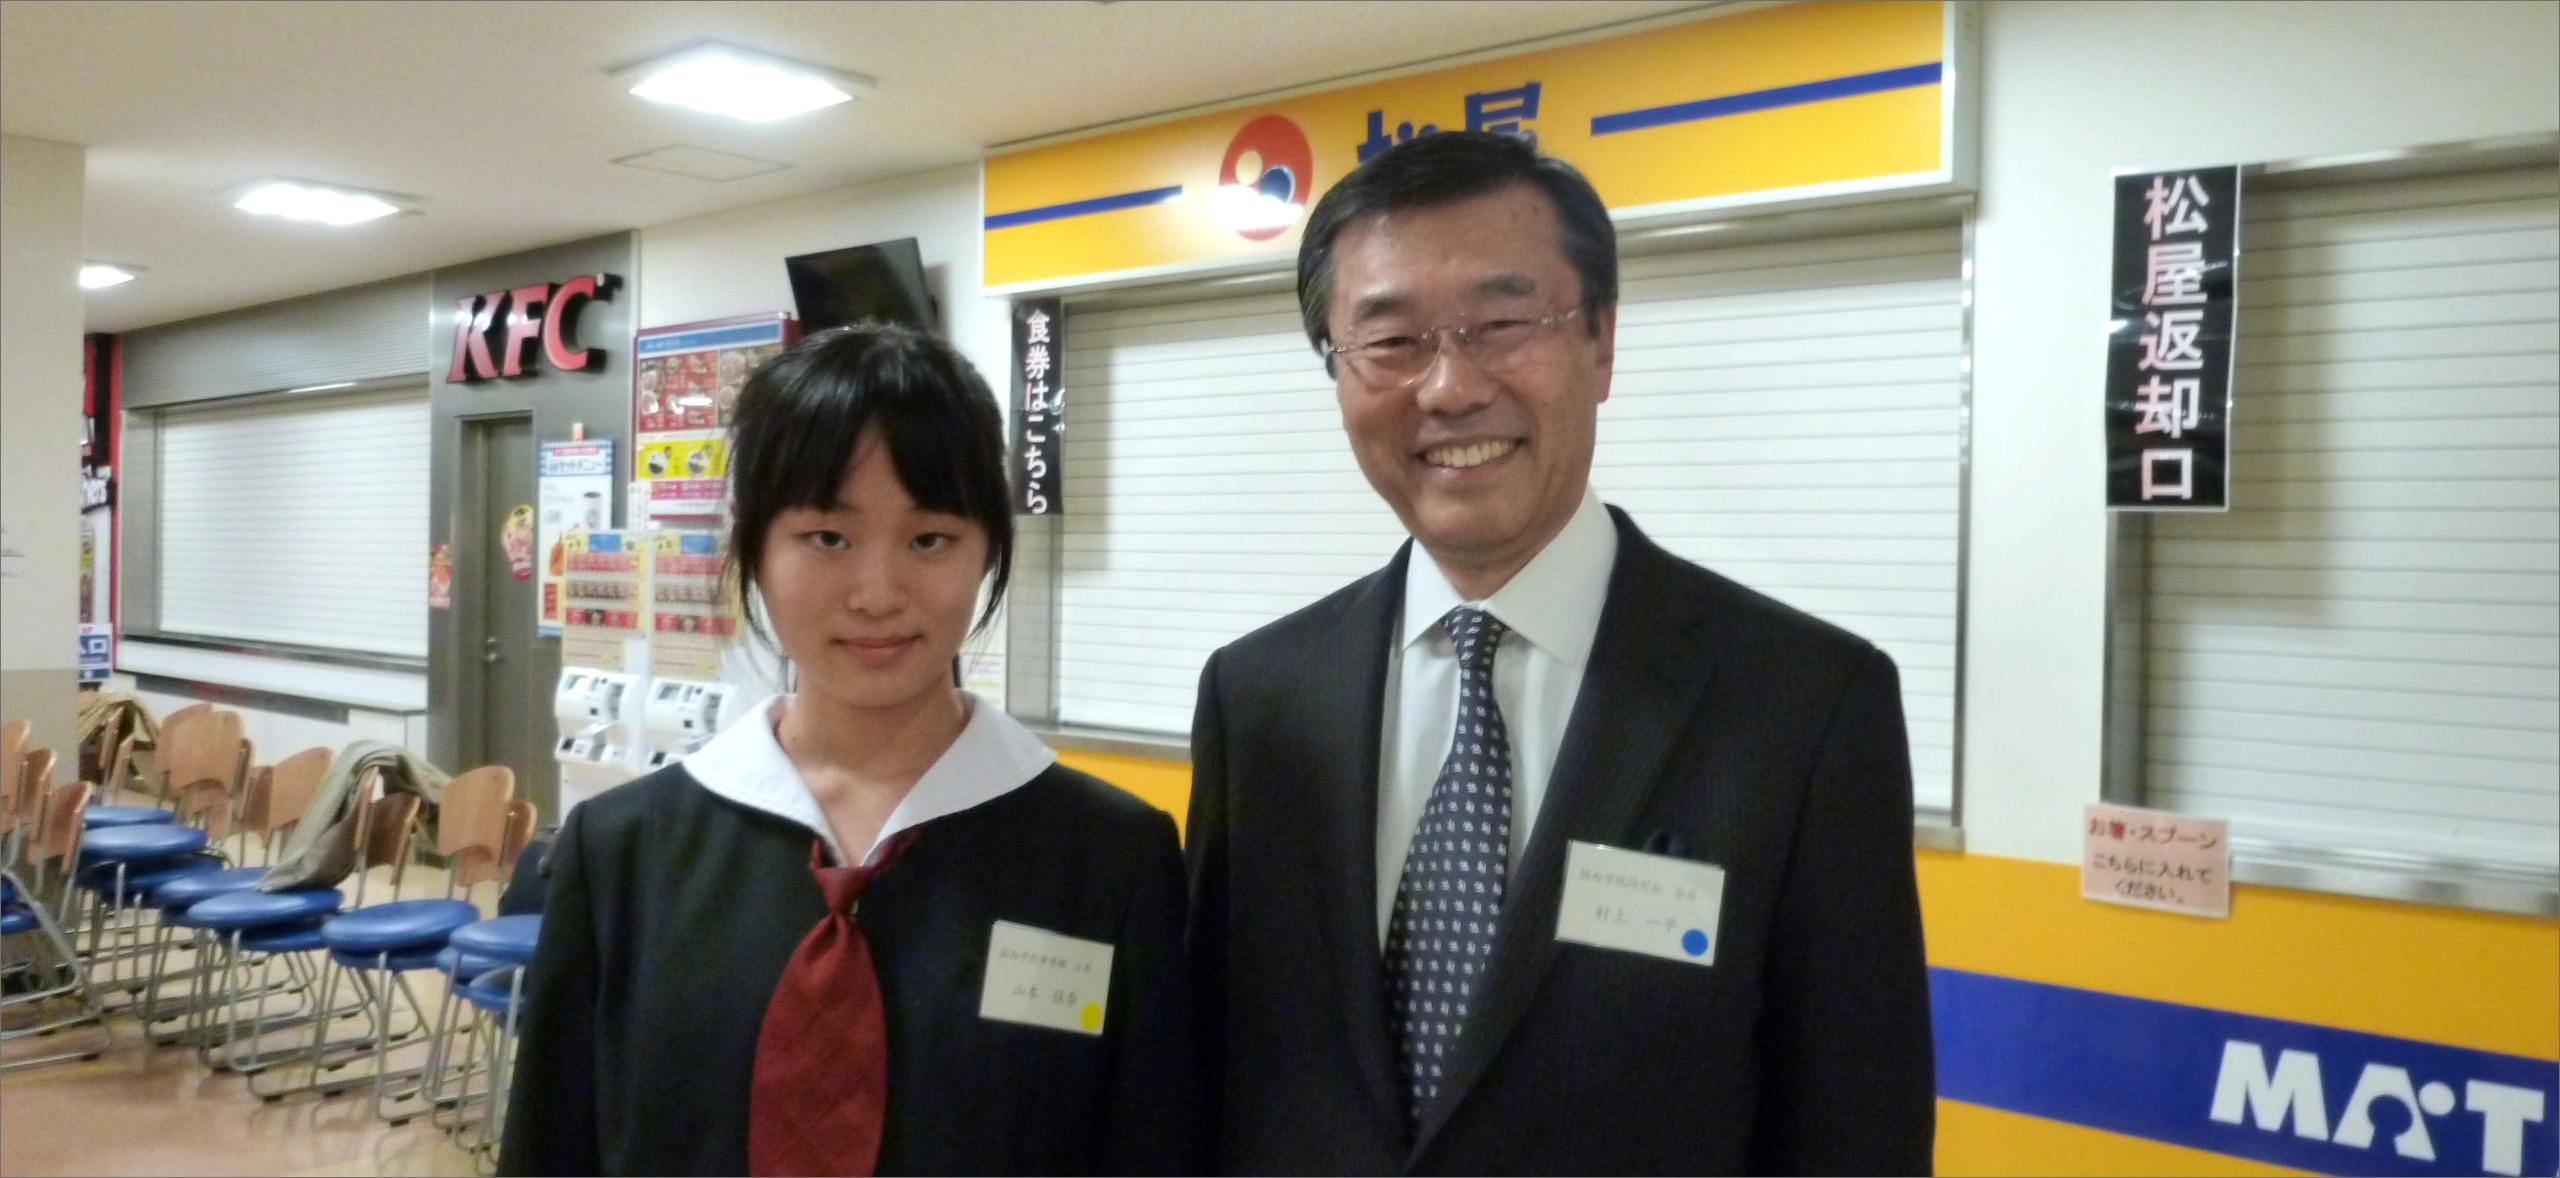 中学生のときに出場したビジネスプランコンテストにて、現関西学院理事長の村上一平さんと